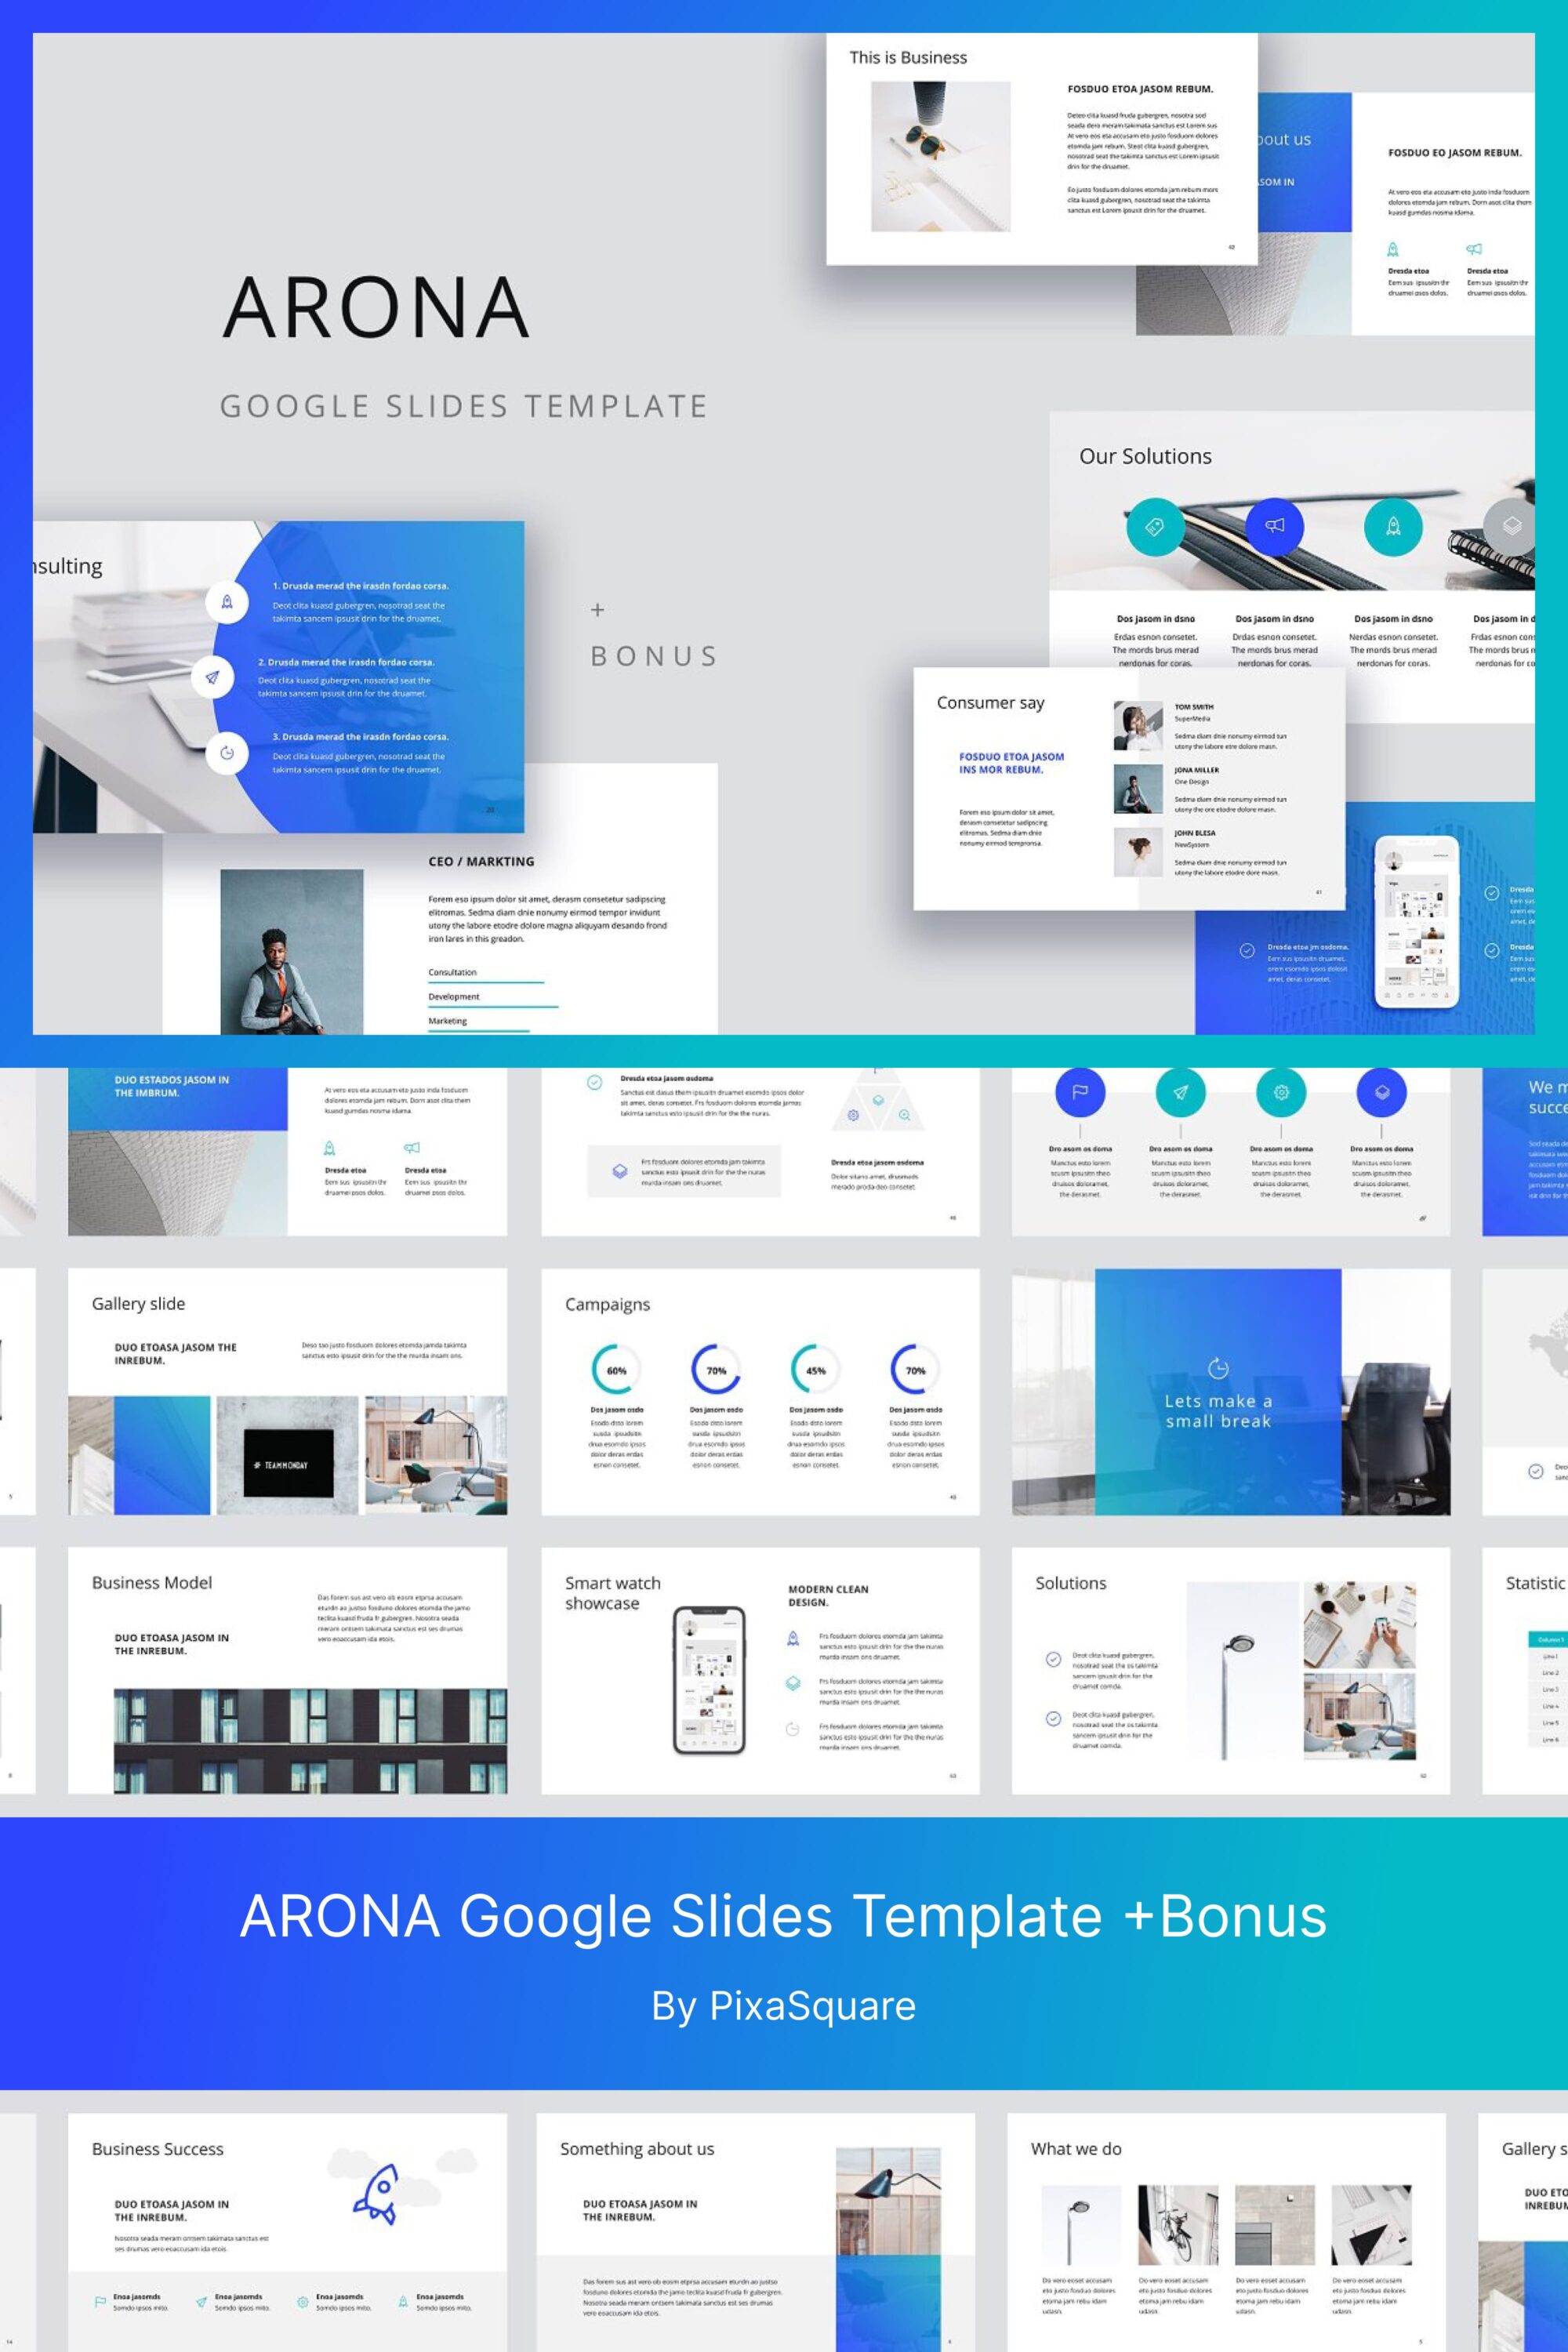 arona google slides template bonus 03